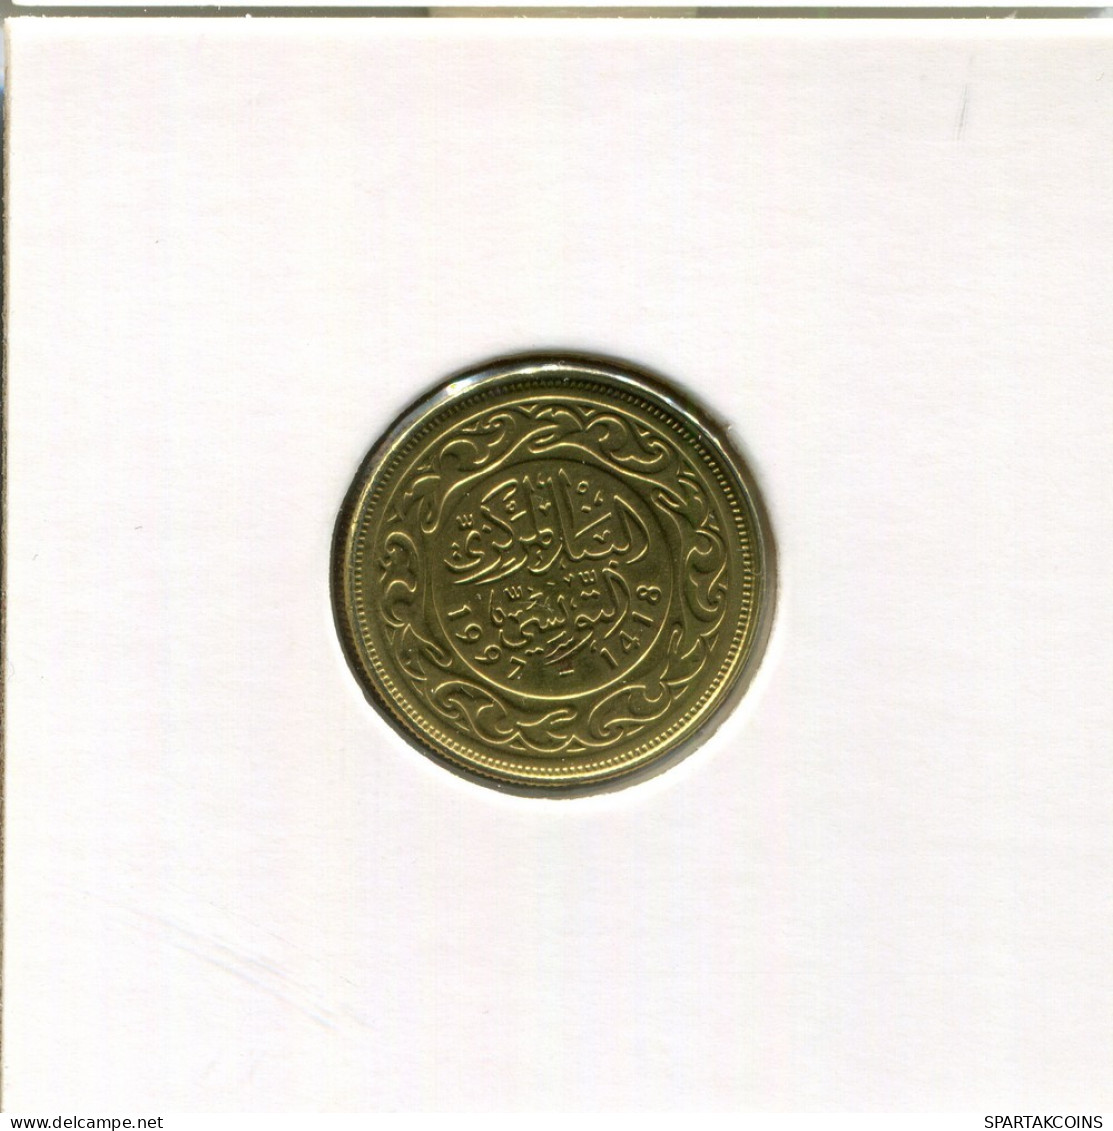 10 MILLIMES 1997 TUNISIA Coin #AP820.2.U.A - Tunisia